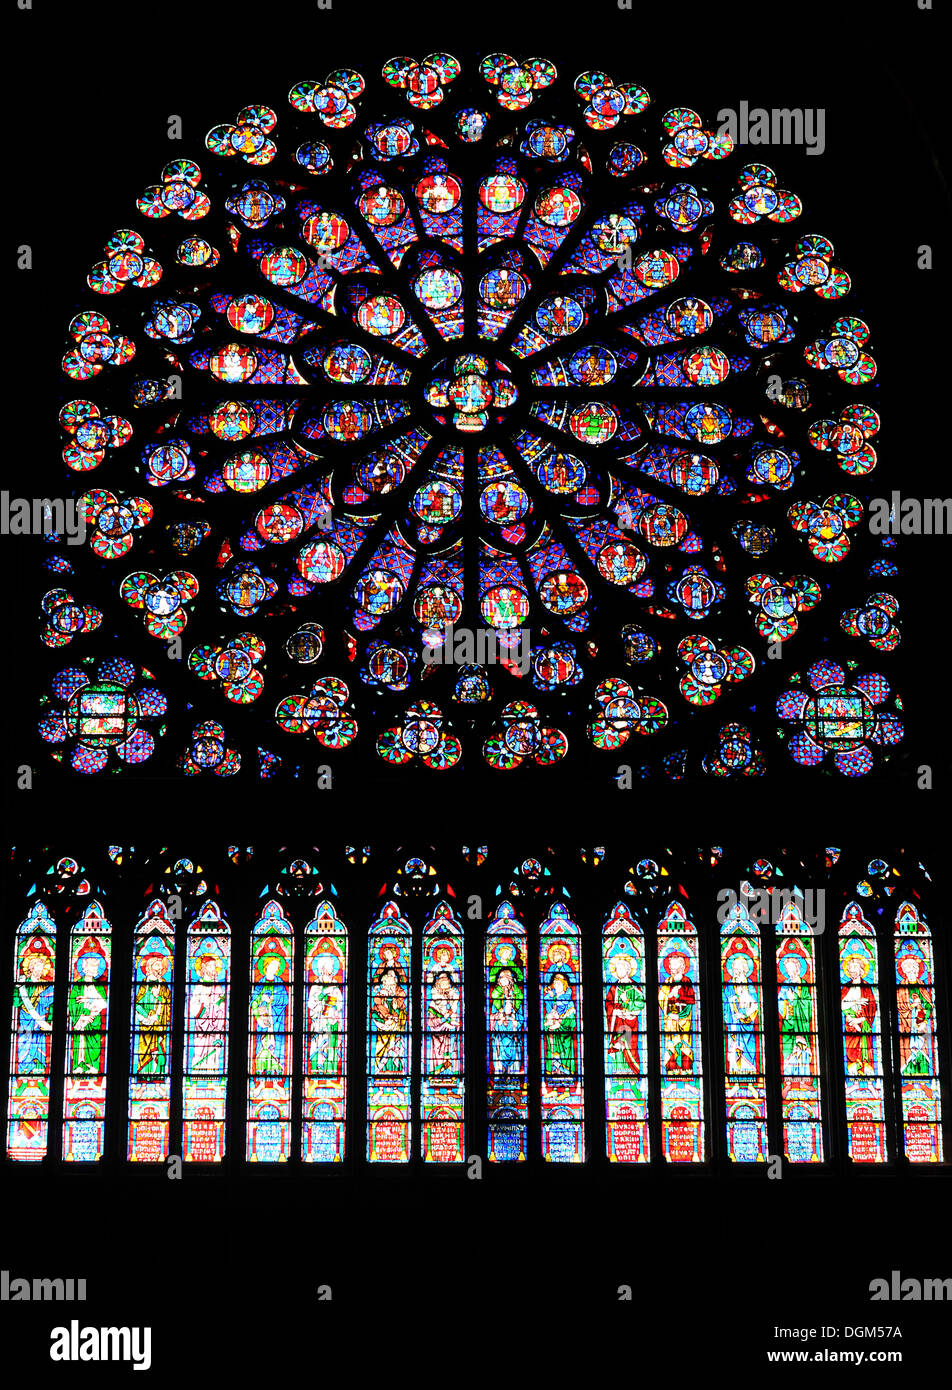 Rose window, stained glass window, Cathedral of Notre-Dame de Paris, Ile de la Cite, Paris, France, Europe Stock Photo